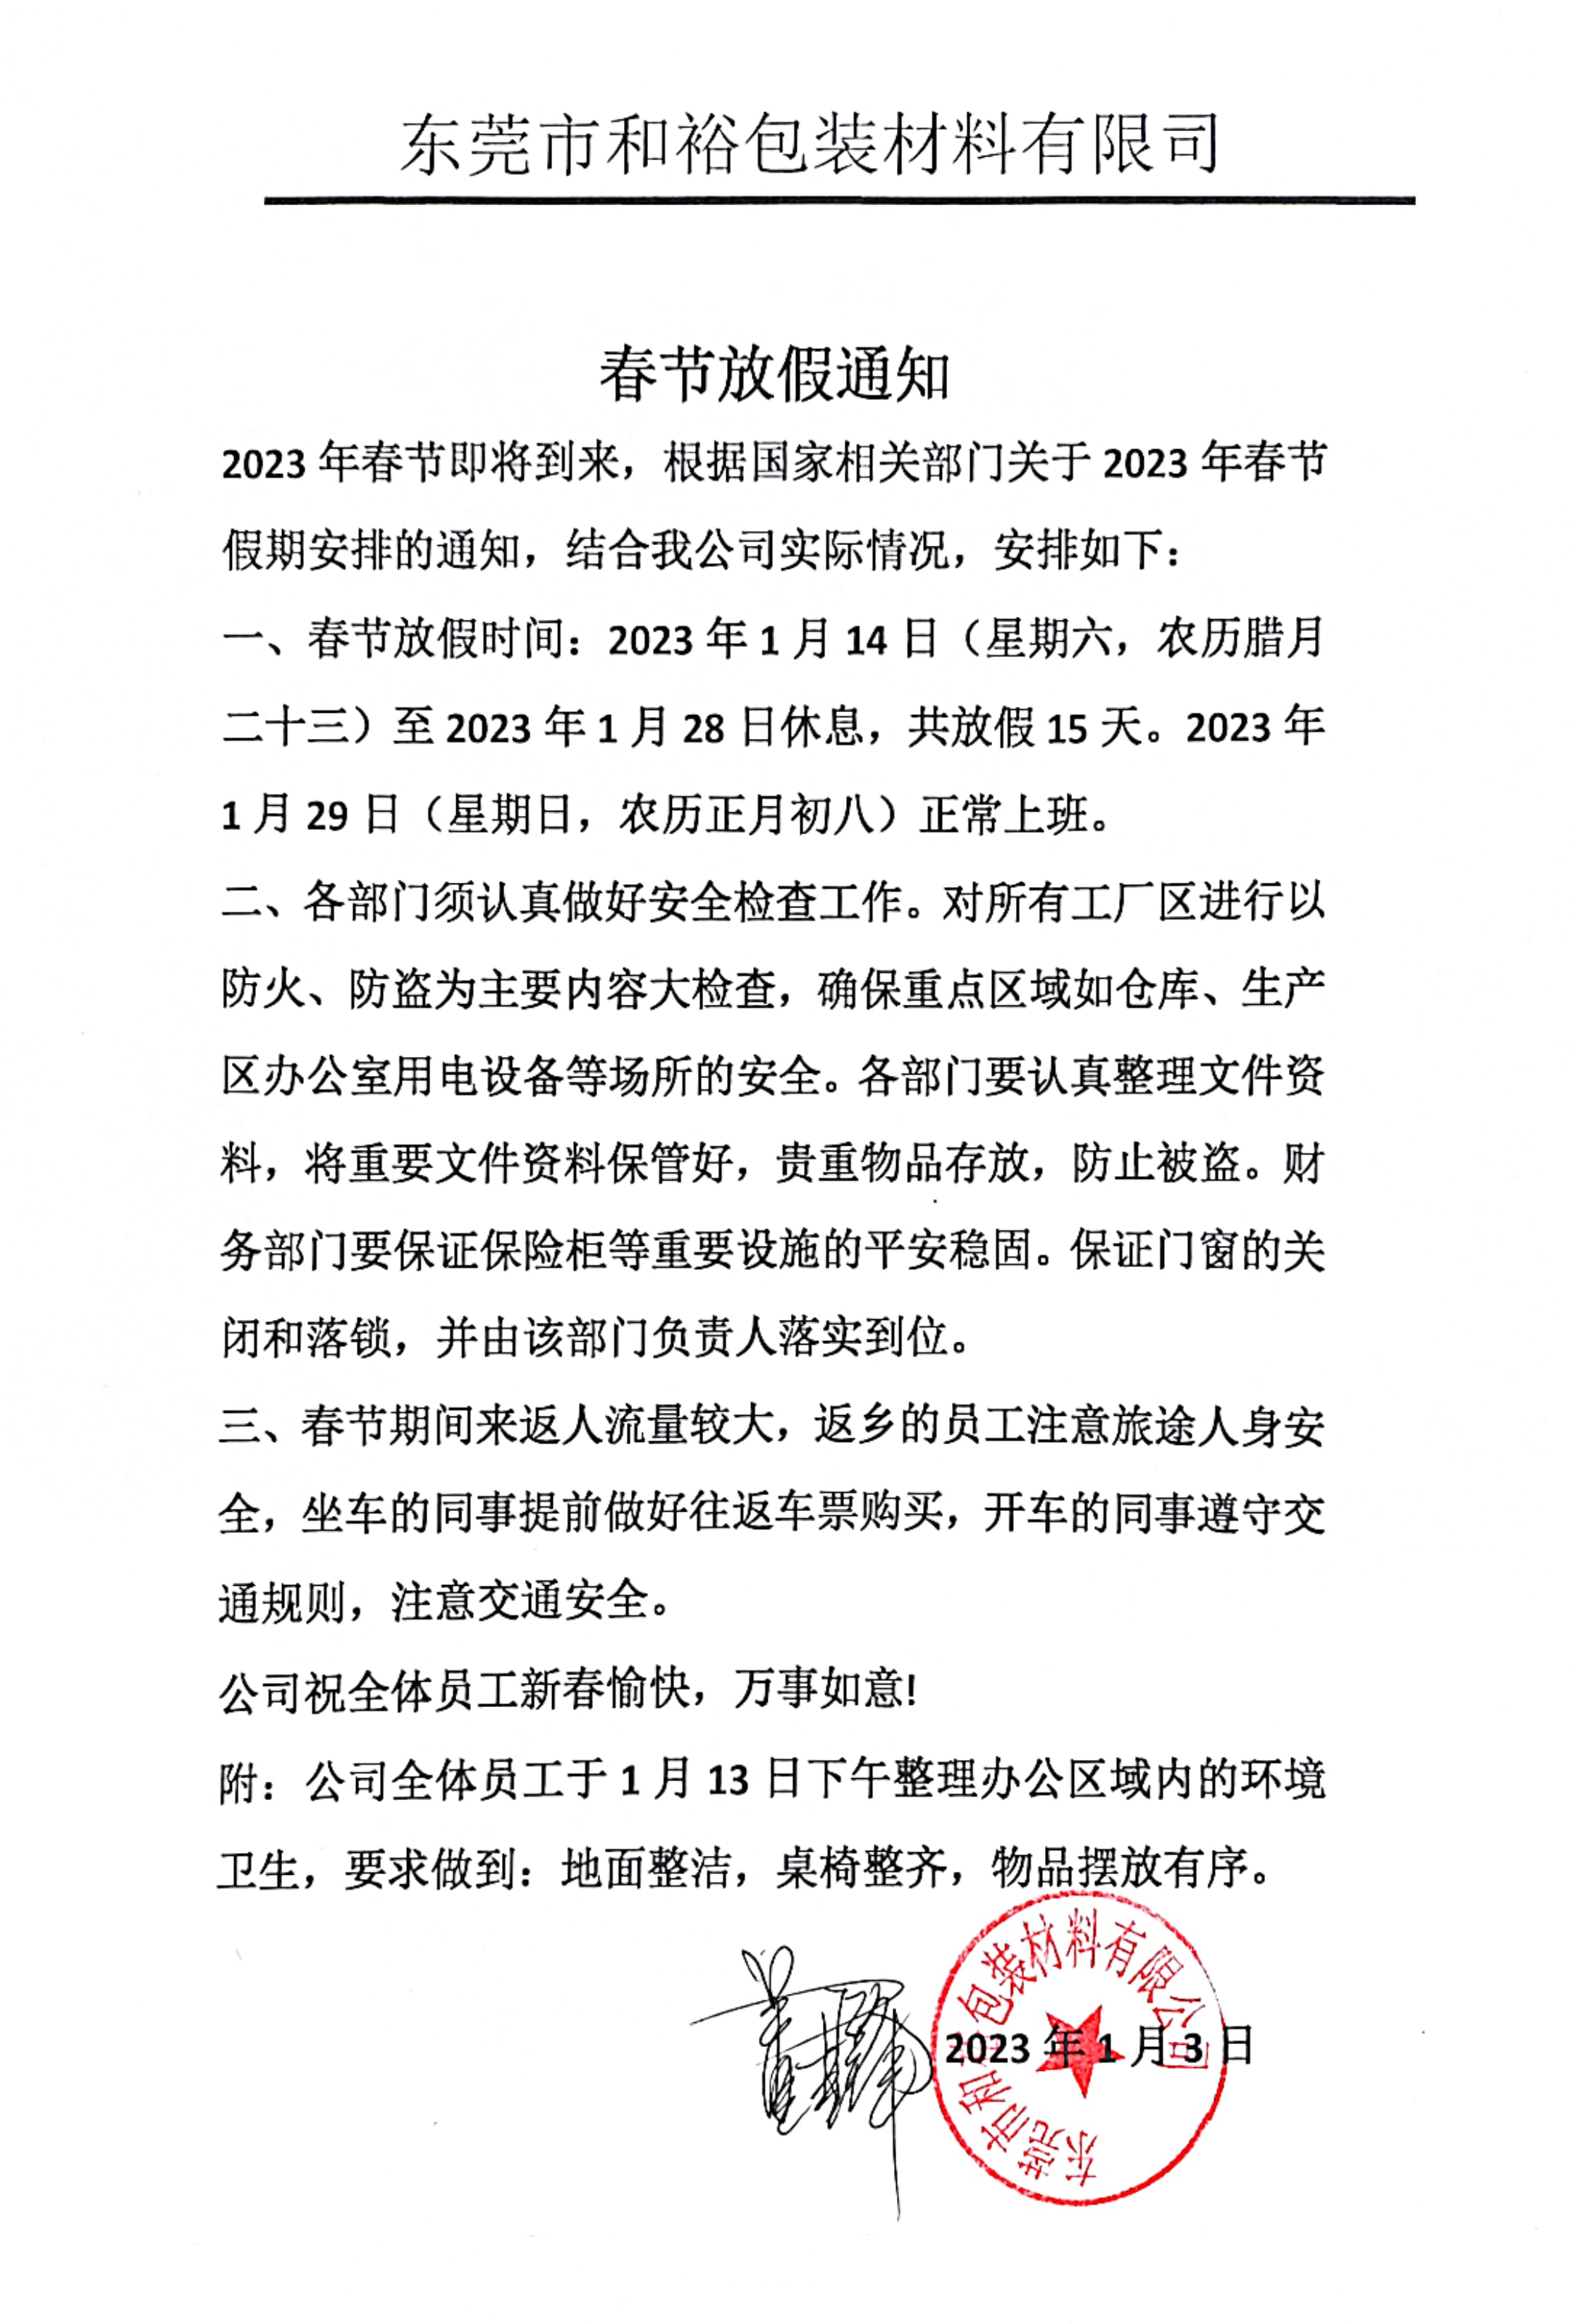 迪庆藏族自治州2023年和裕包装春节放假通知